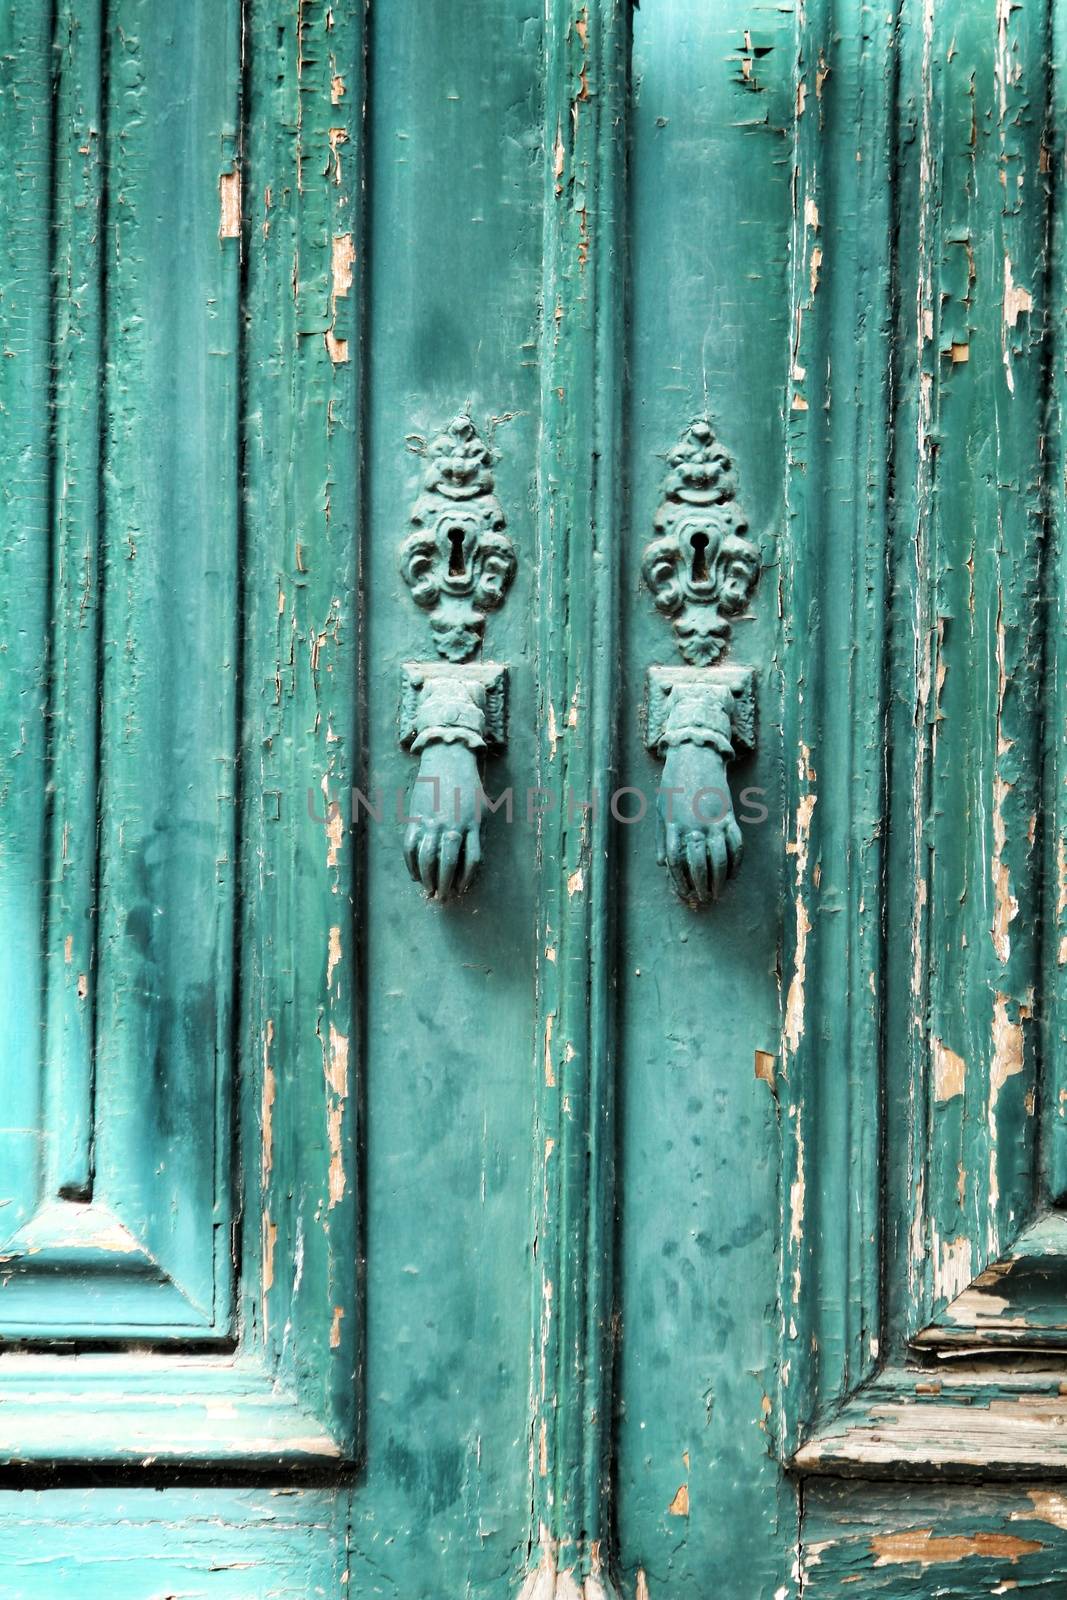 Door knockers with hand shape on green wooden door by soniabonet